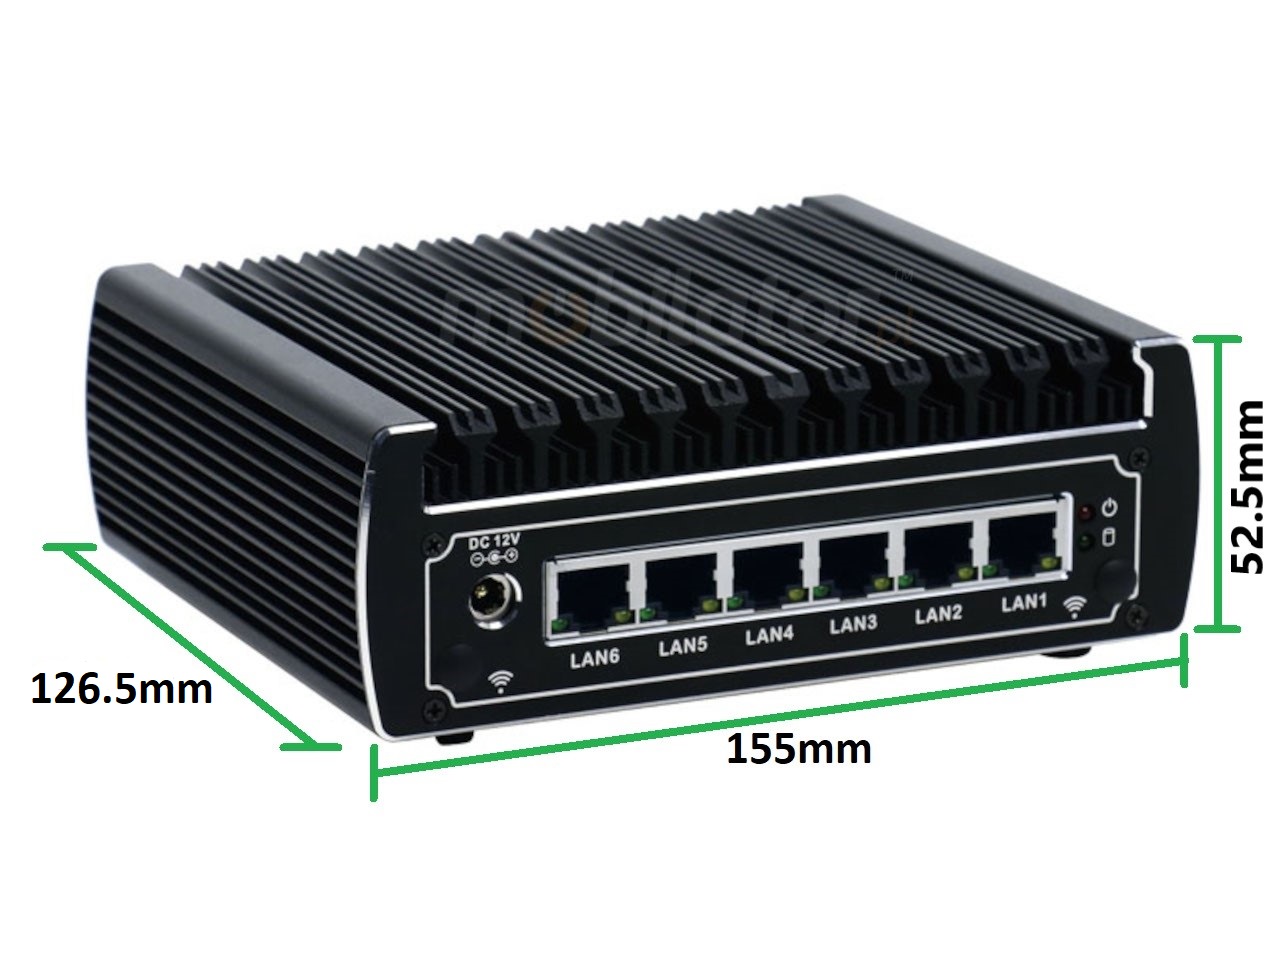   IBOX N133 v.4, wymiary, SSD, DDR4, przemysłowy, mały, szybki, niezawodny, fanless, industrial, small, LAN, INTEL i3